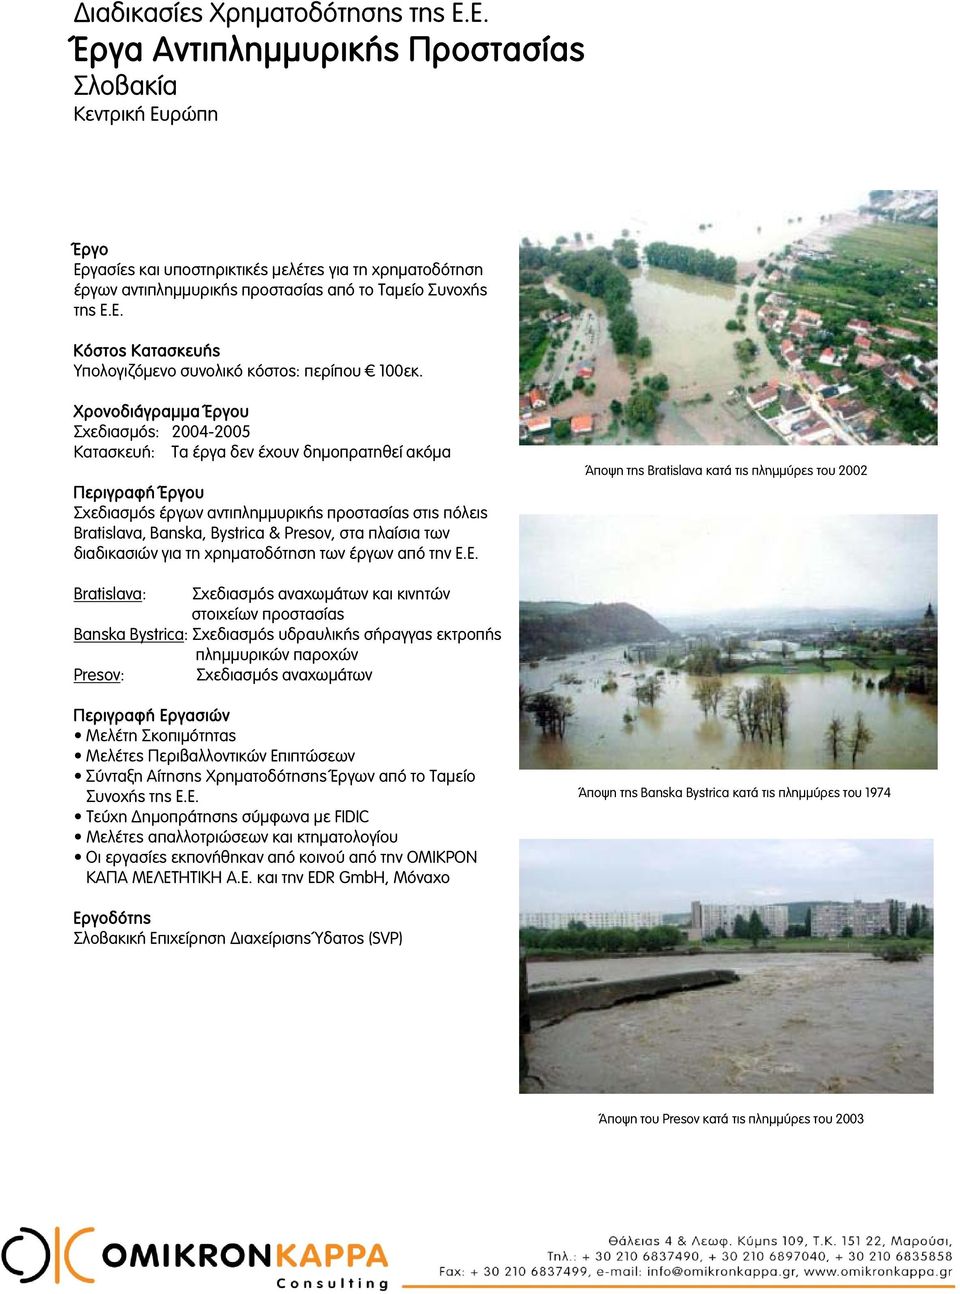 Χρονοδιάγραμμα υ Σχεδιασμός: 2004-2005 Κατασκευή: Τα έργα δεν έχουν δημοπρατηθεί ακόμα Περιγραφή υ Σχεδιασμός έργων αντιπλημμυρικής προστασίας στις πόλεις Bratislava, Banska, Bystrica & Presov, στα